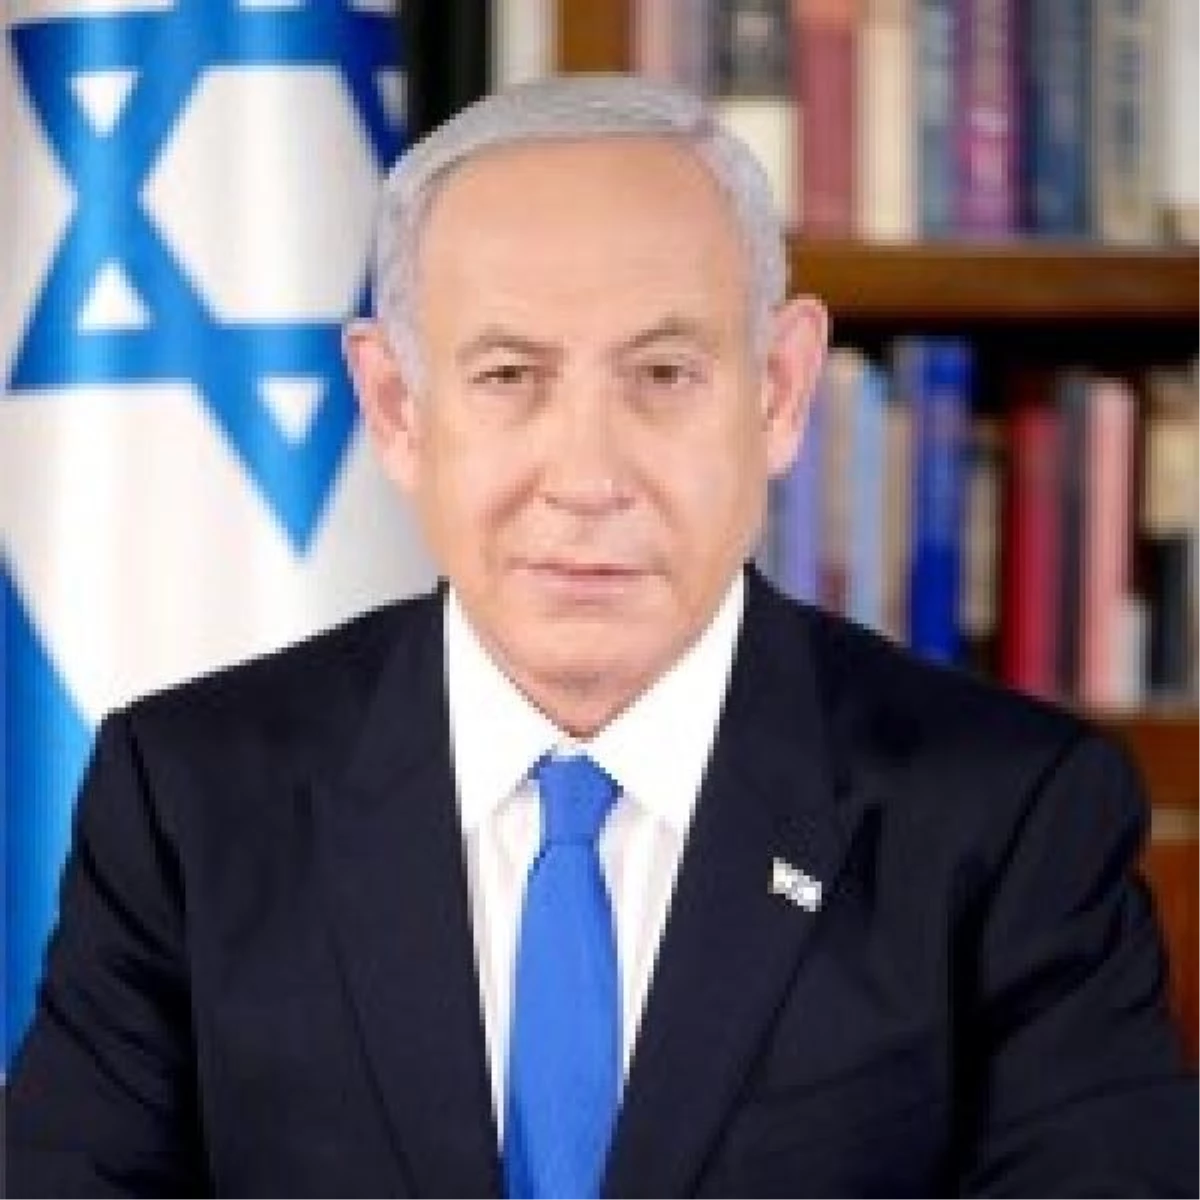 Netanyahu, Celile\'de yeni bir yerleşim alanı kuracaklarını duyurdu